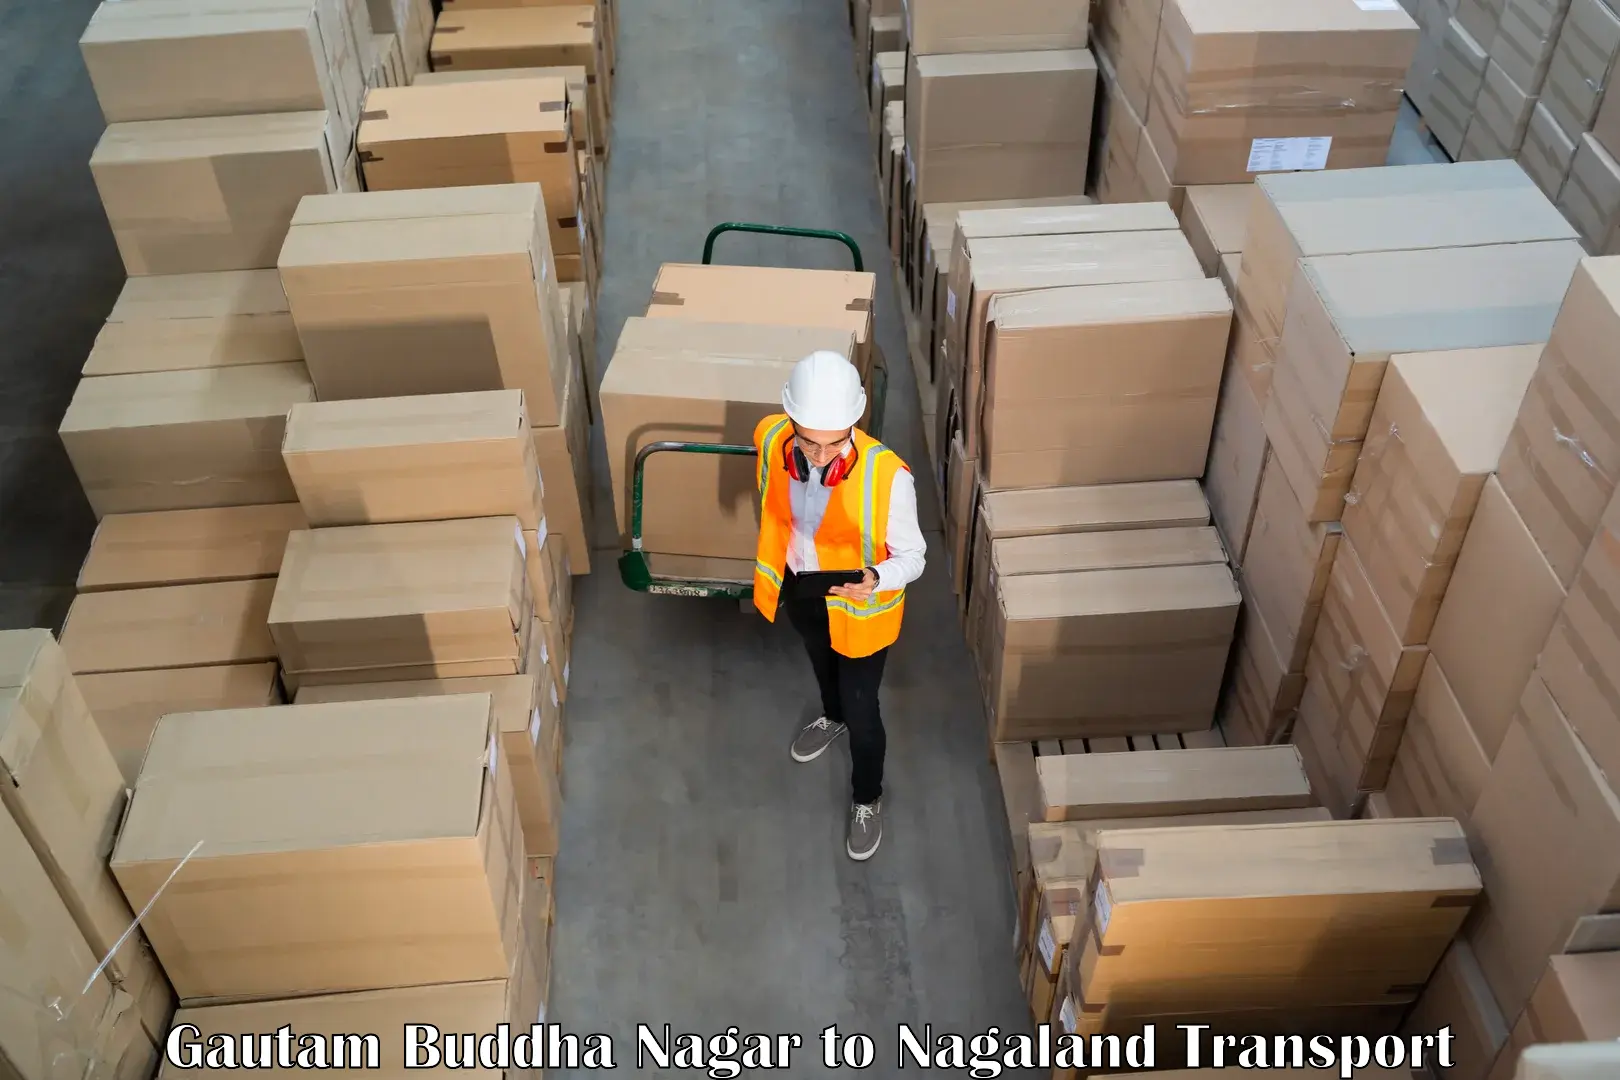 Goods delivery service Gautam Buddha Nagar to Nagaland